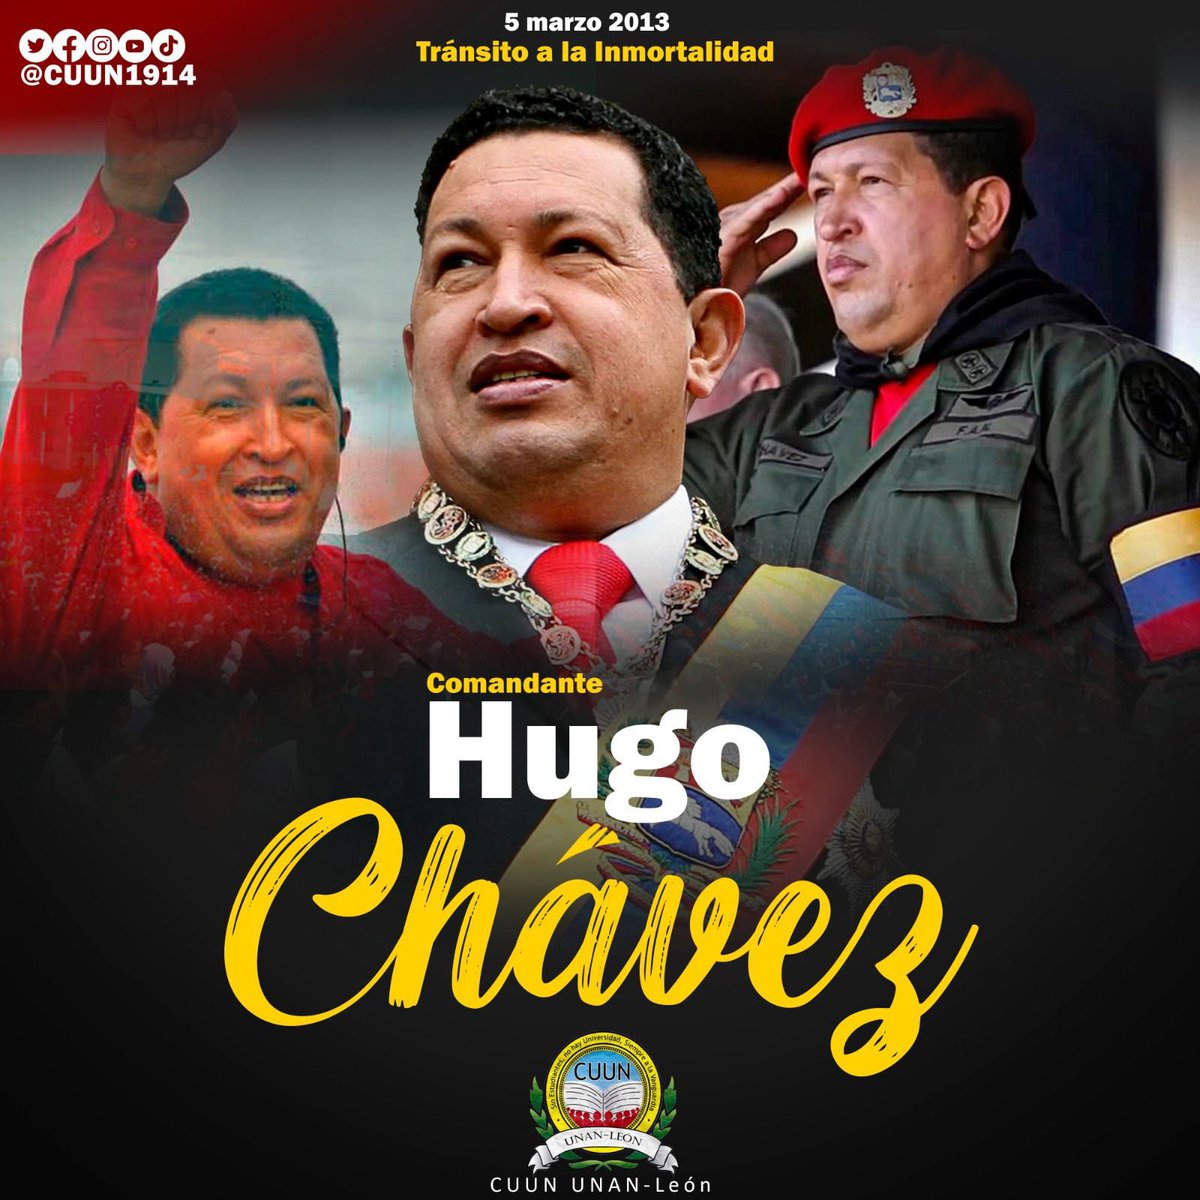 #5deMarzo || Conmemoramos 10 años del tránsito a la inmortalidad del Comandante Hugo Chávez Frías.

#CUUN1914